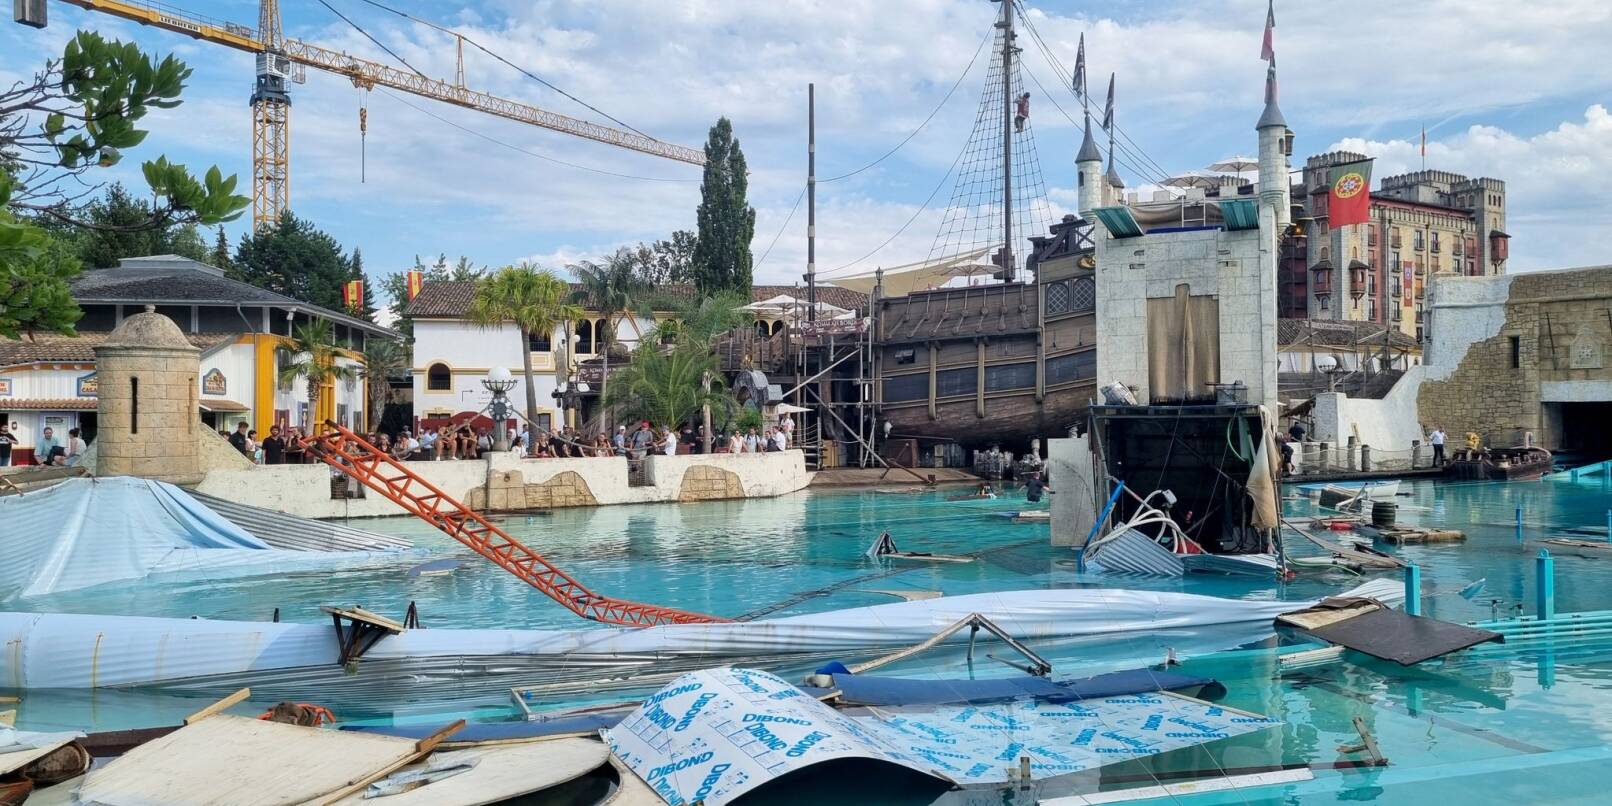 Ein Blick auf das Areal der «High-Diving-Show «Retorno dos Piratas»» und das Becken der Attraktion «Atlantica SuperSplash» nach dem Unfall.